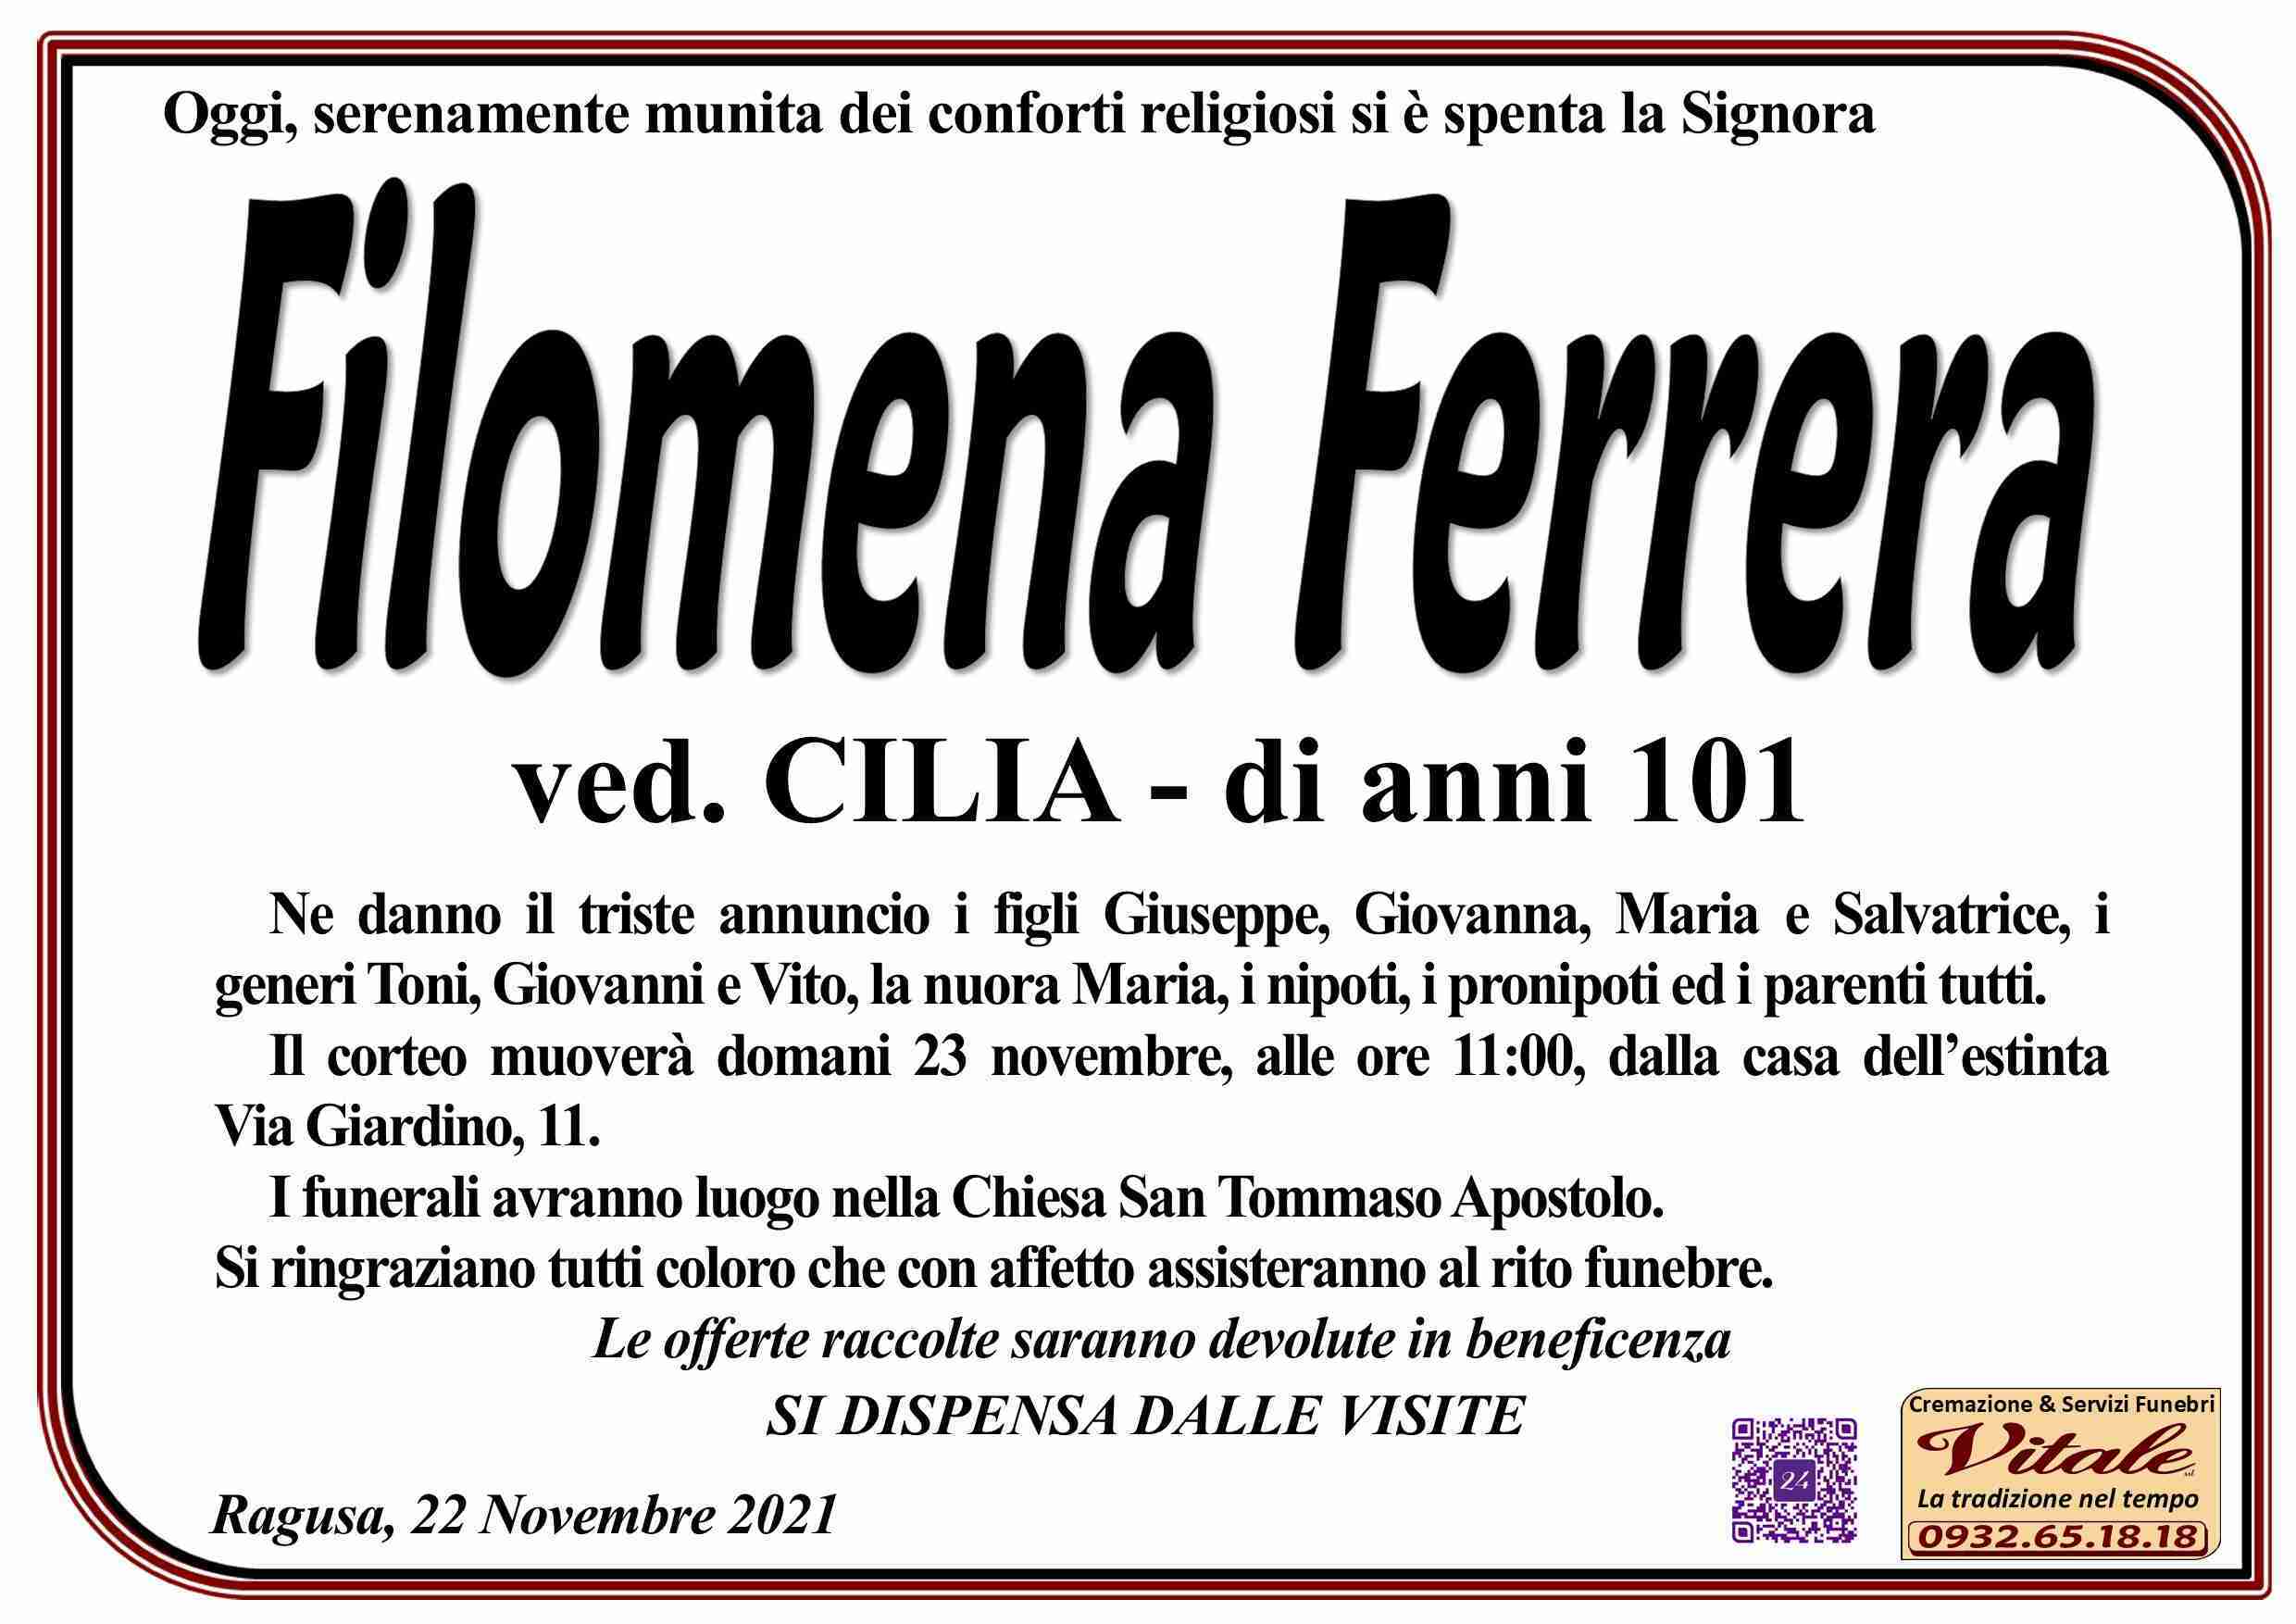 Filomena Ferrera